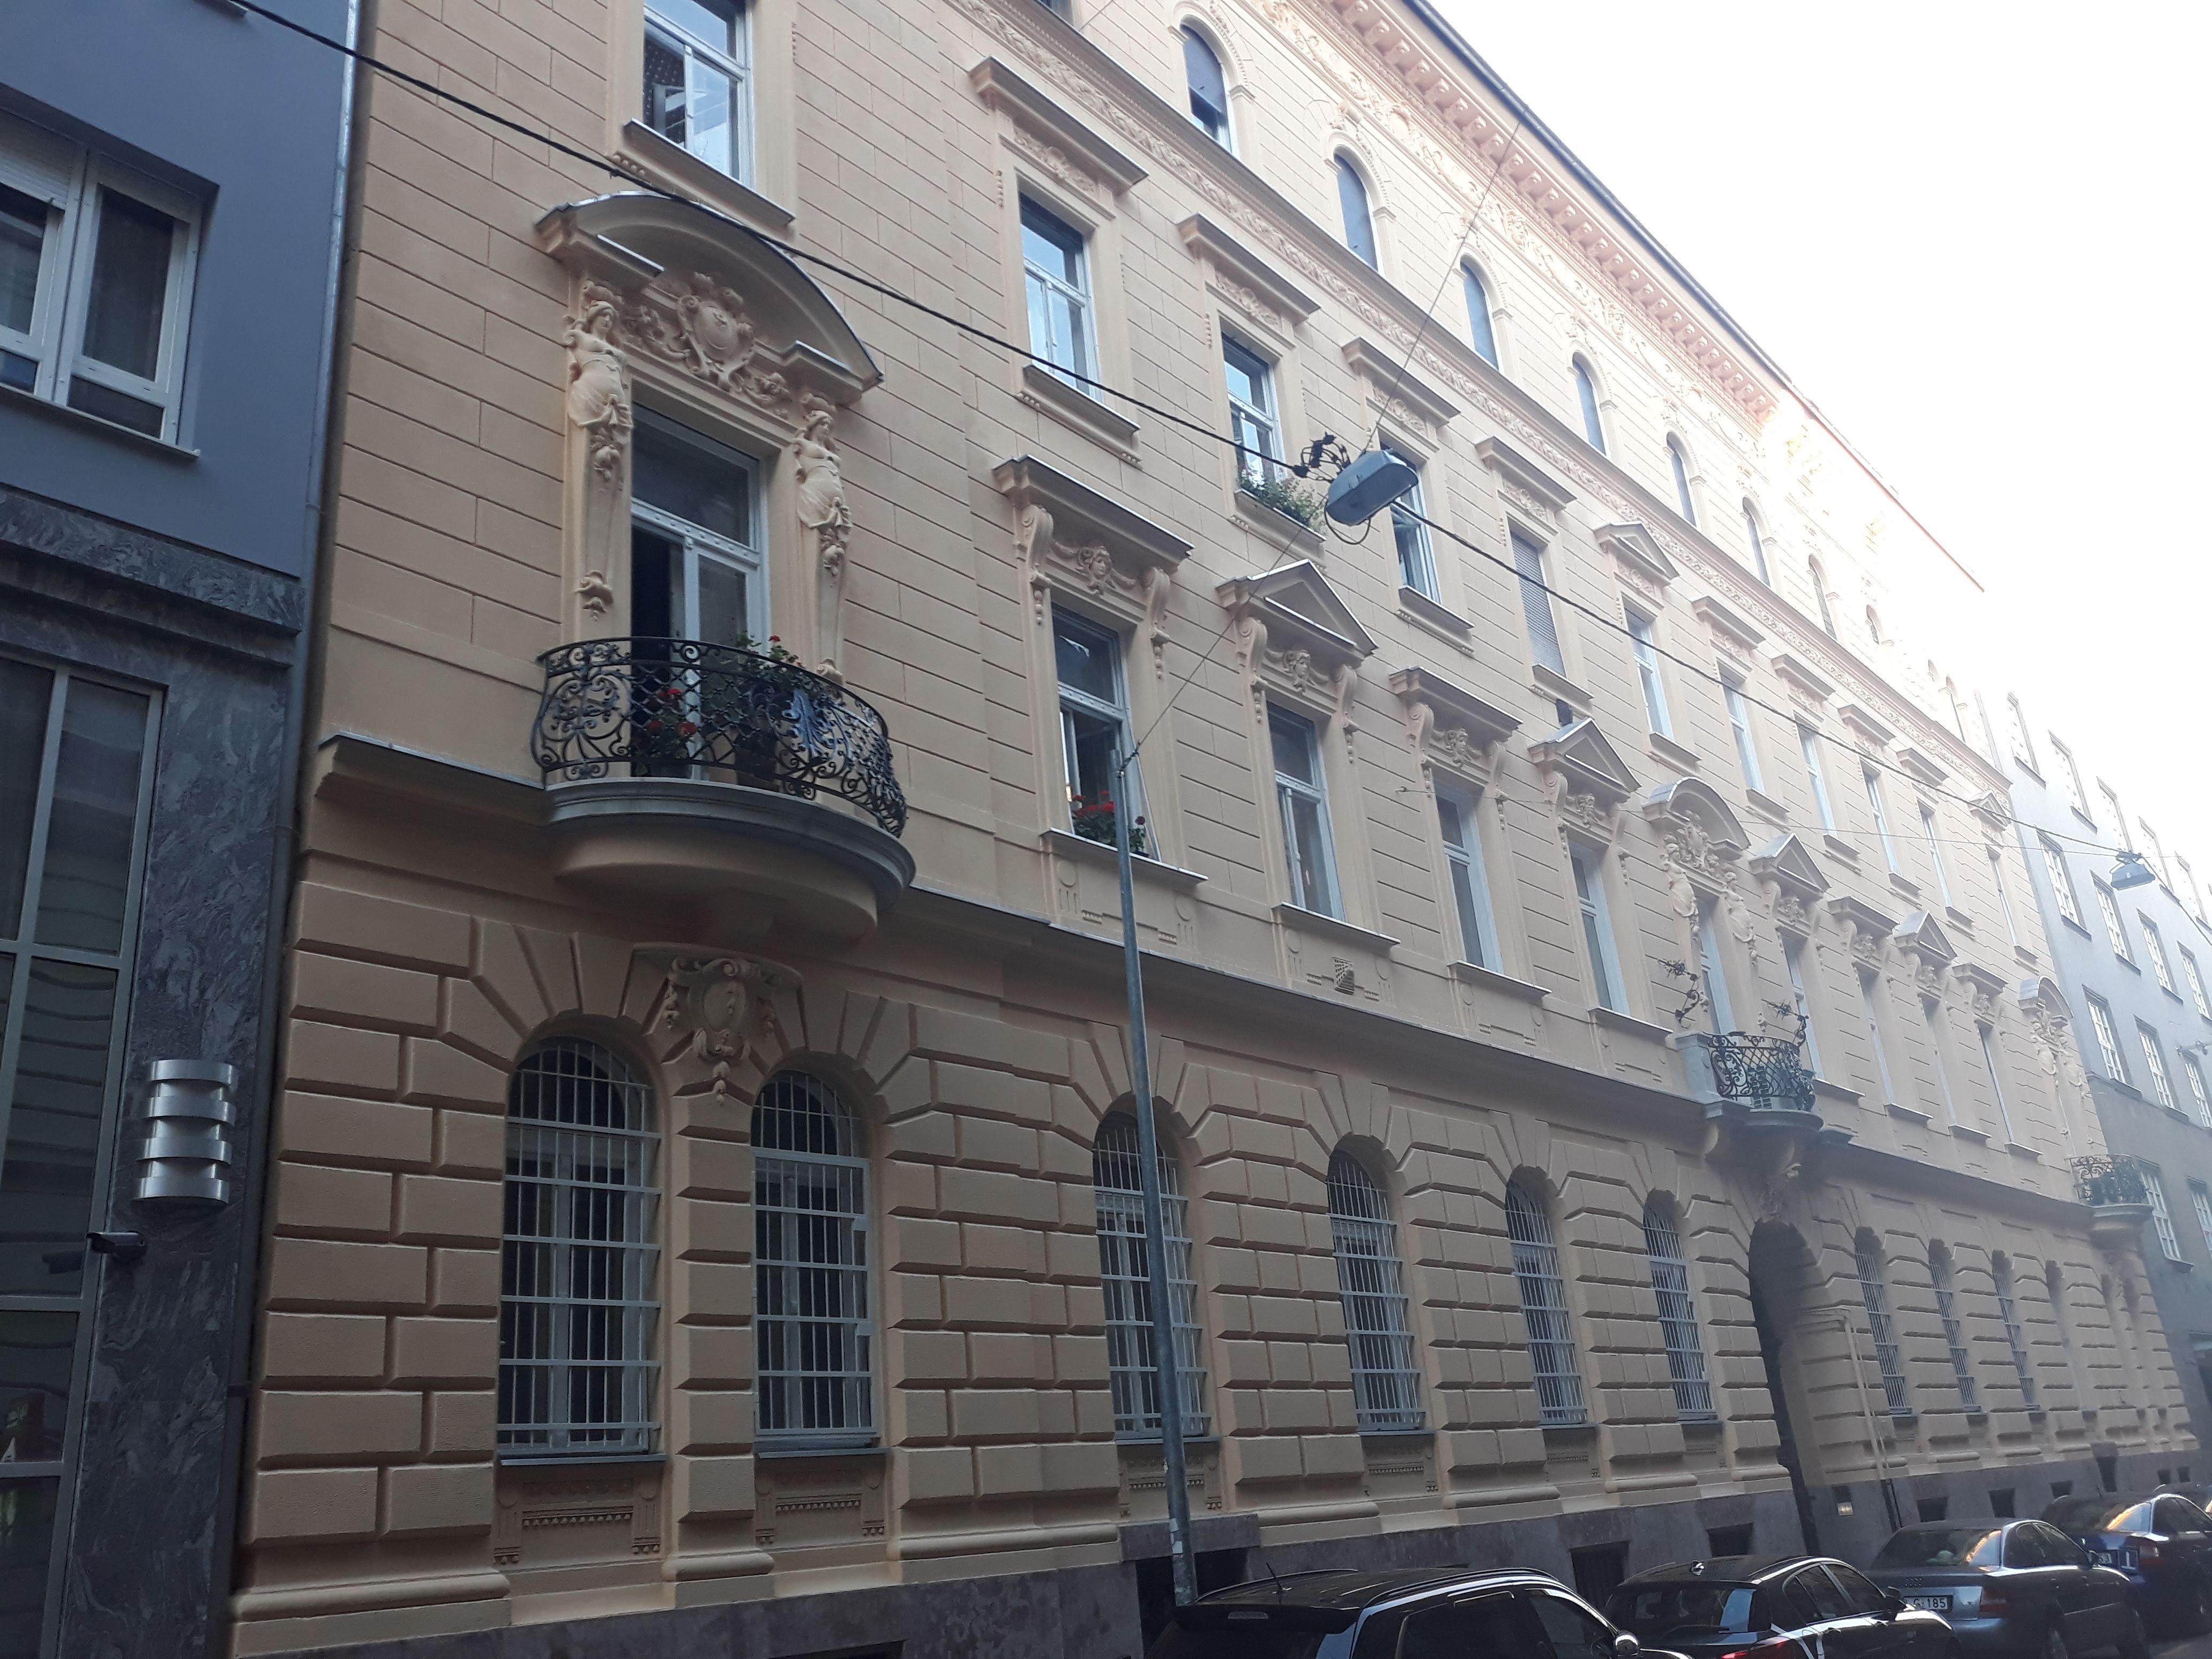 Apartamente, gaarsoniere mobilate, locuințe de închiriat în Budapesta pe termen lung
